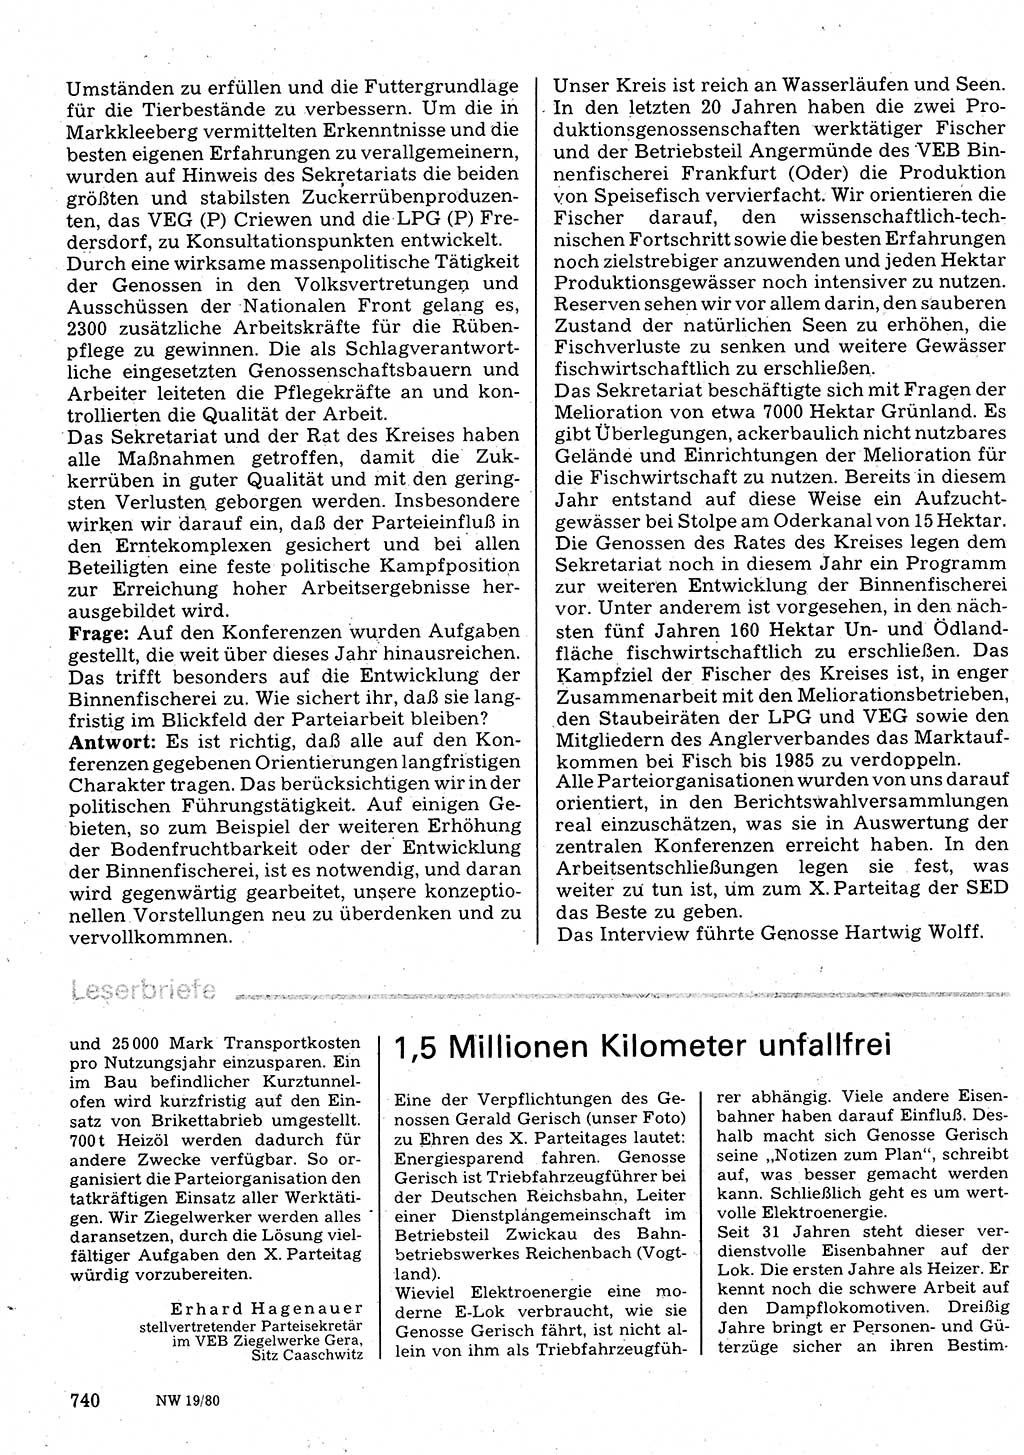 Neuer Weg (NW), Organ des Zentralkomitees (ZK) der SED (Sozialistische Einheitspartei Deutschlands) für Fragen des Parteilebens, 35. Jahrgang [Deutsche Demokratische Republik (DDR)] 1980, Seite 740 (NW ZK SED DDR 1980, S. 740)